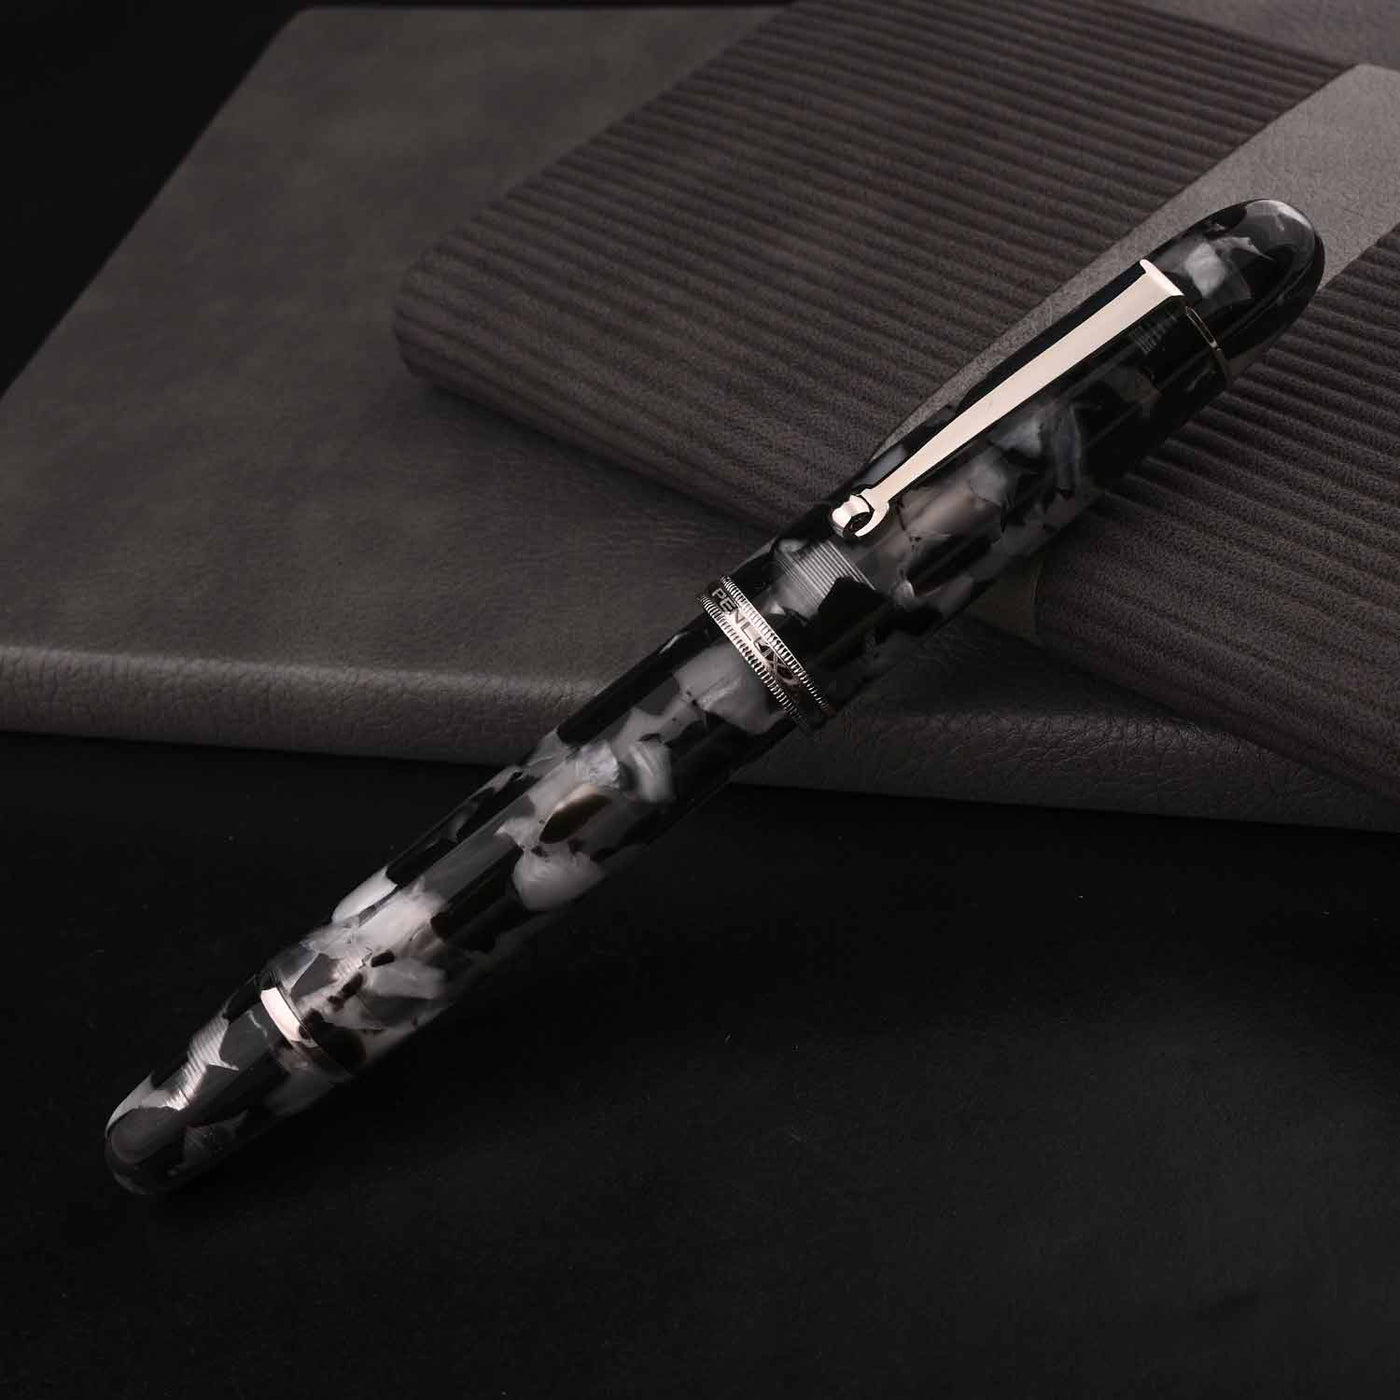 Penlux Masterpiece Grande Fountain Pen - Koi Black & White 10